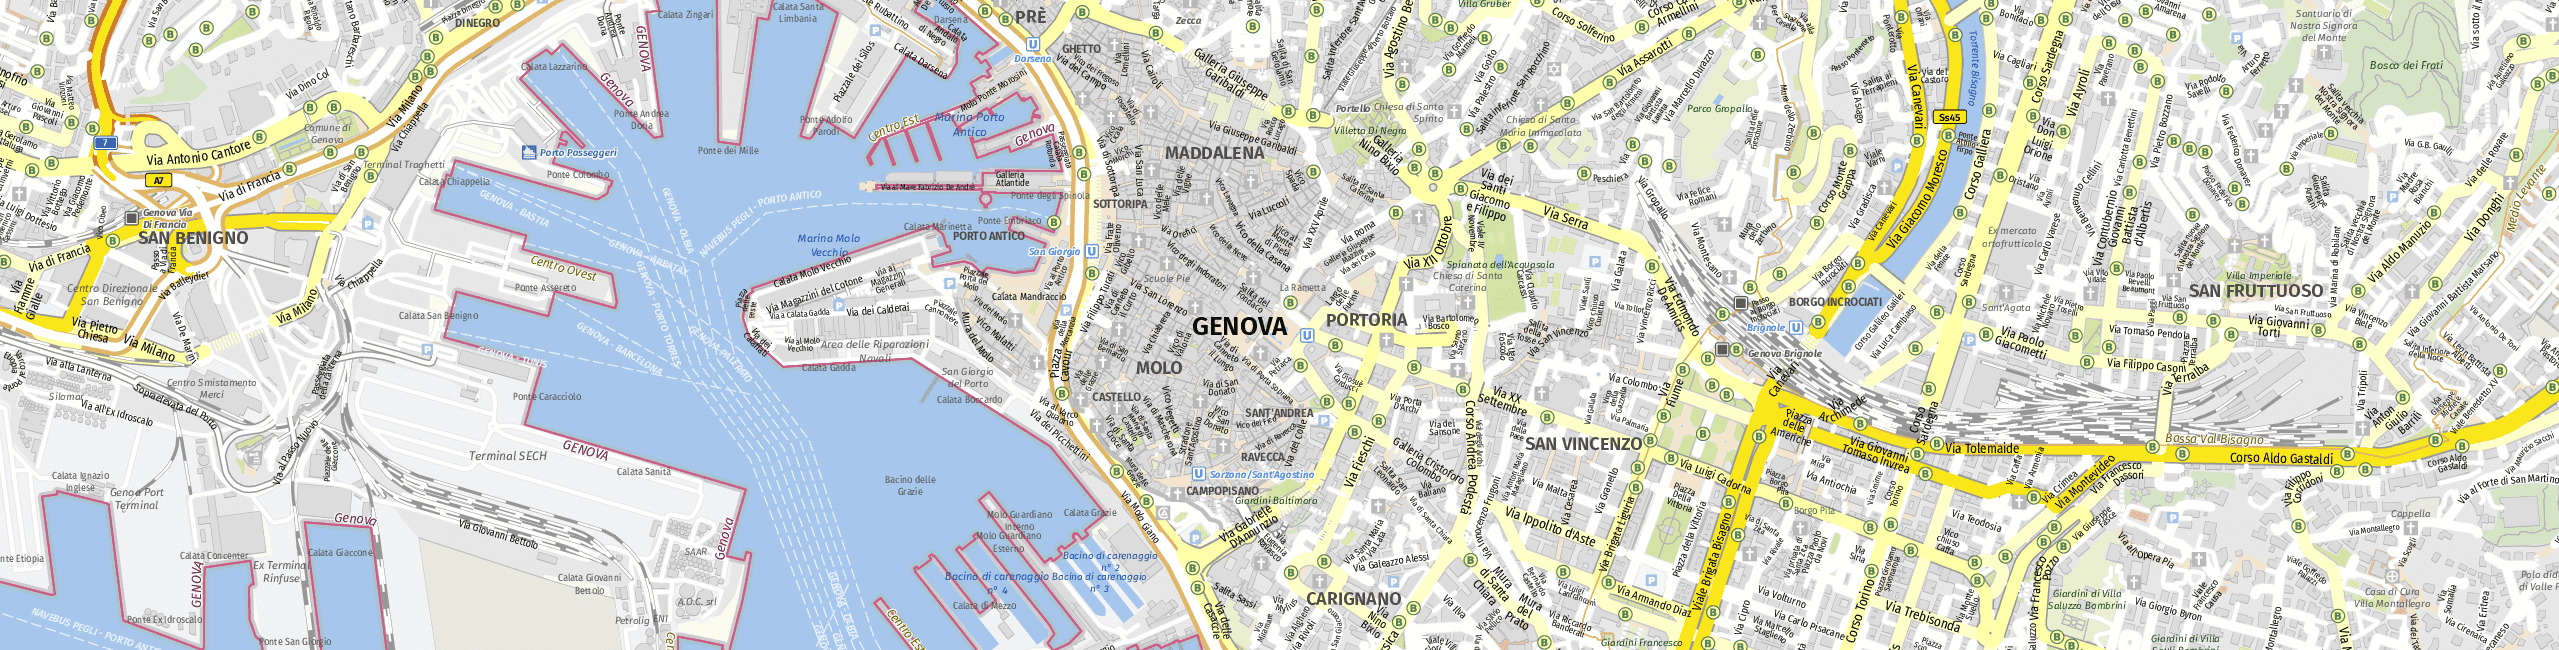 Stadtplan Genova zum Downloaden.